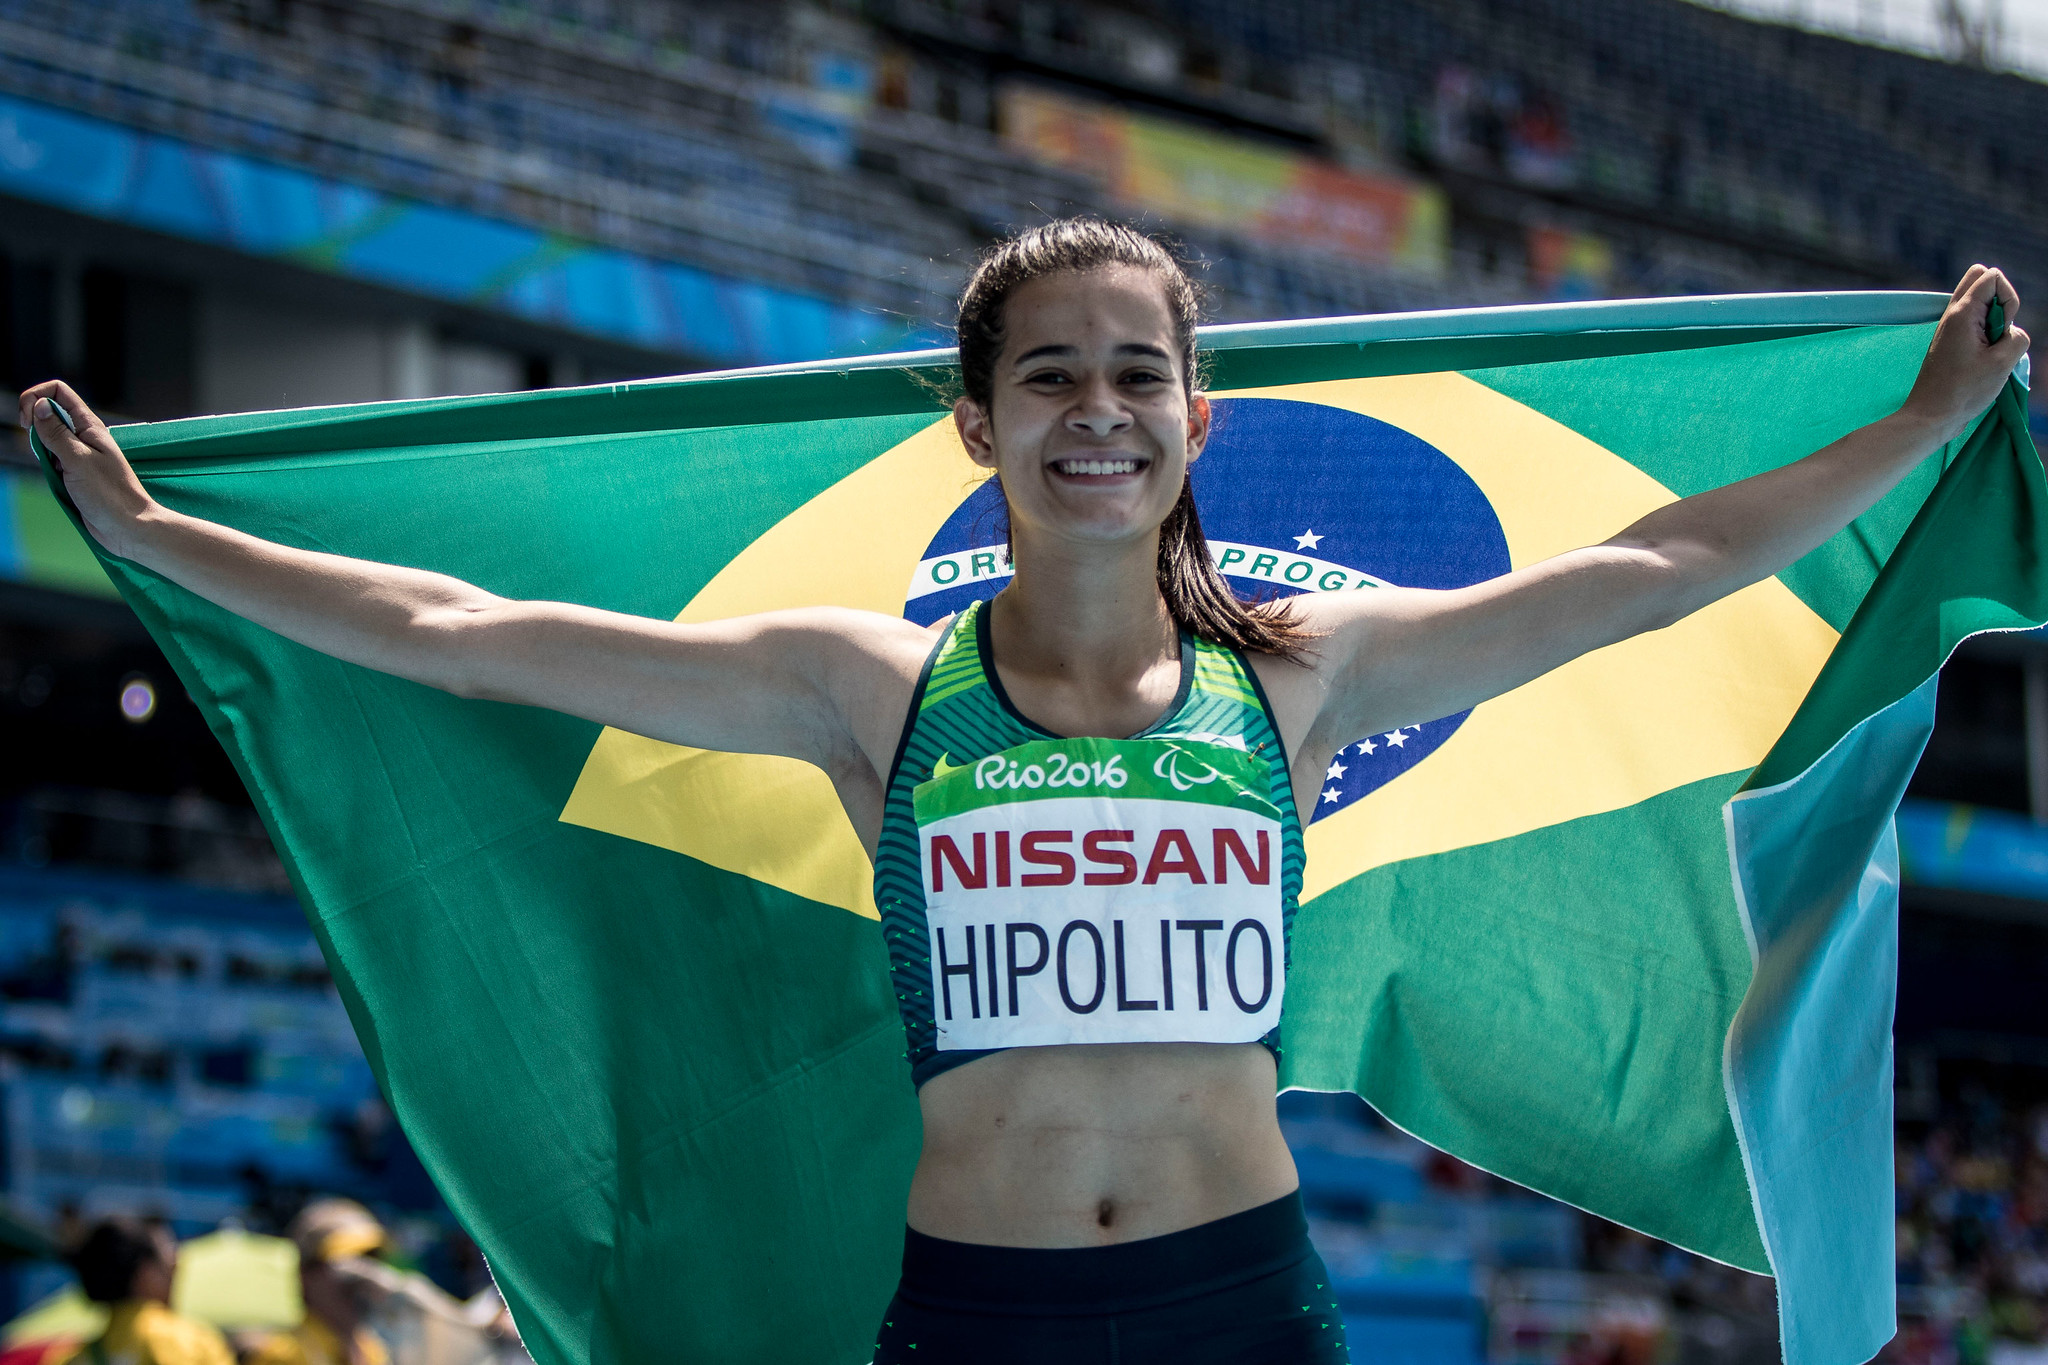 Velocista e sensação da internet: conheça a atleta paralímpica Verônica Hipólito